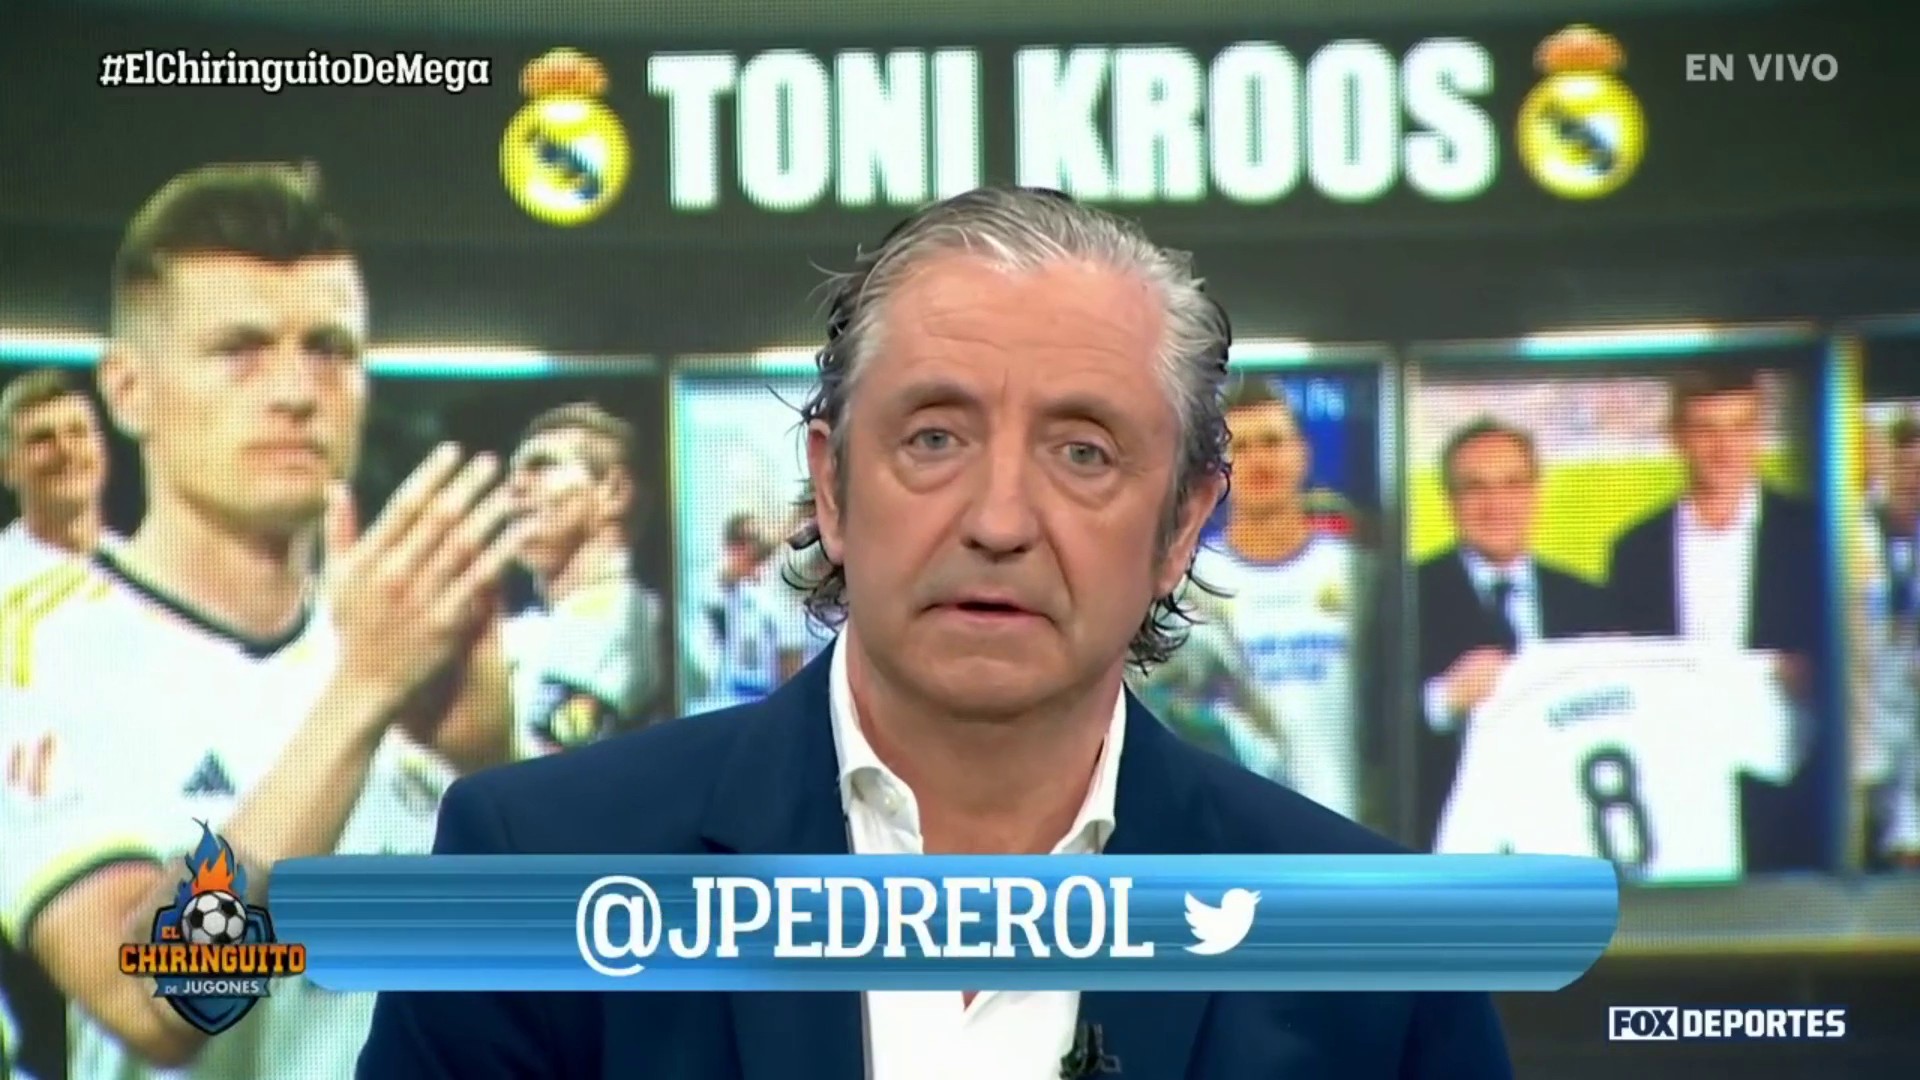 "Se retira en el mejor momento", Josep Pedrerol y su opinión sobre Toni Kroos: El Chiringuito